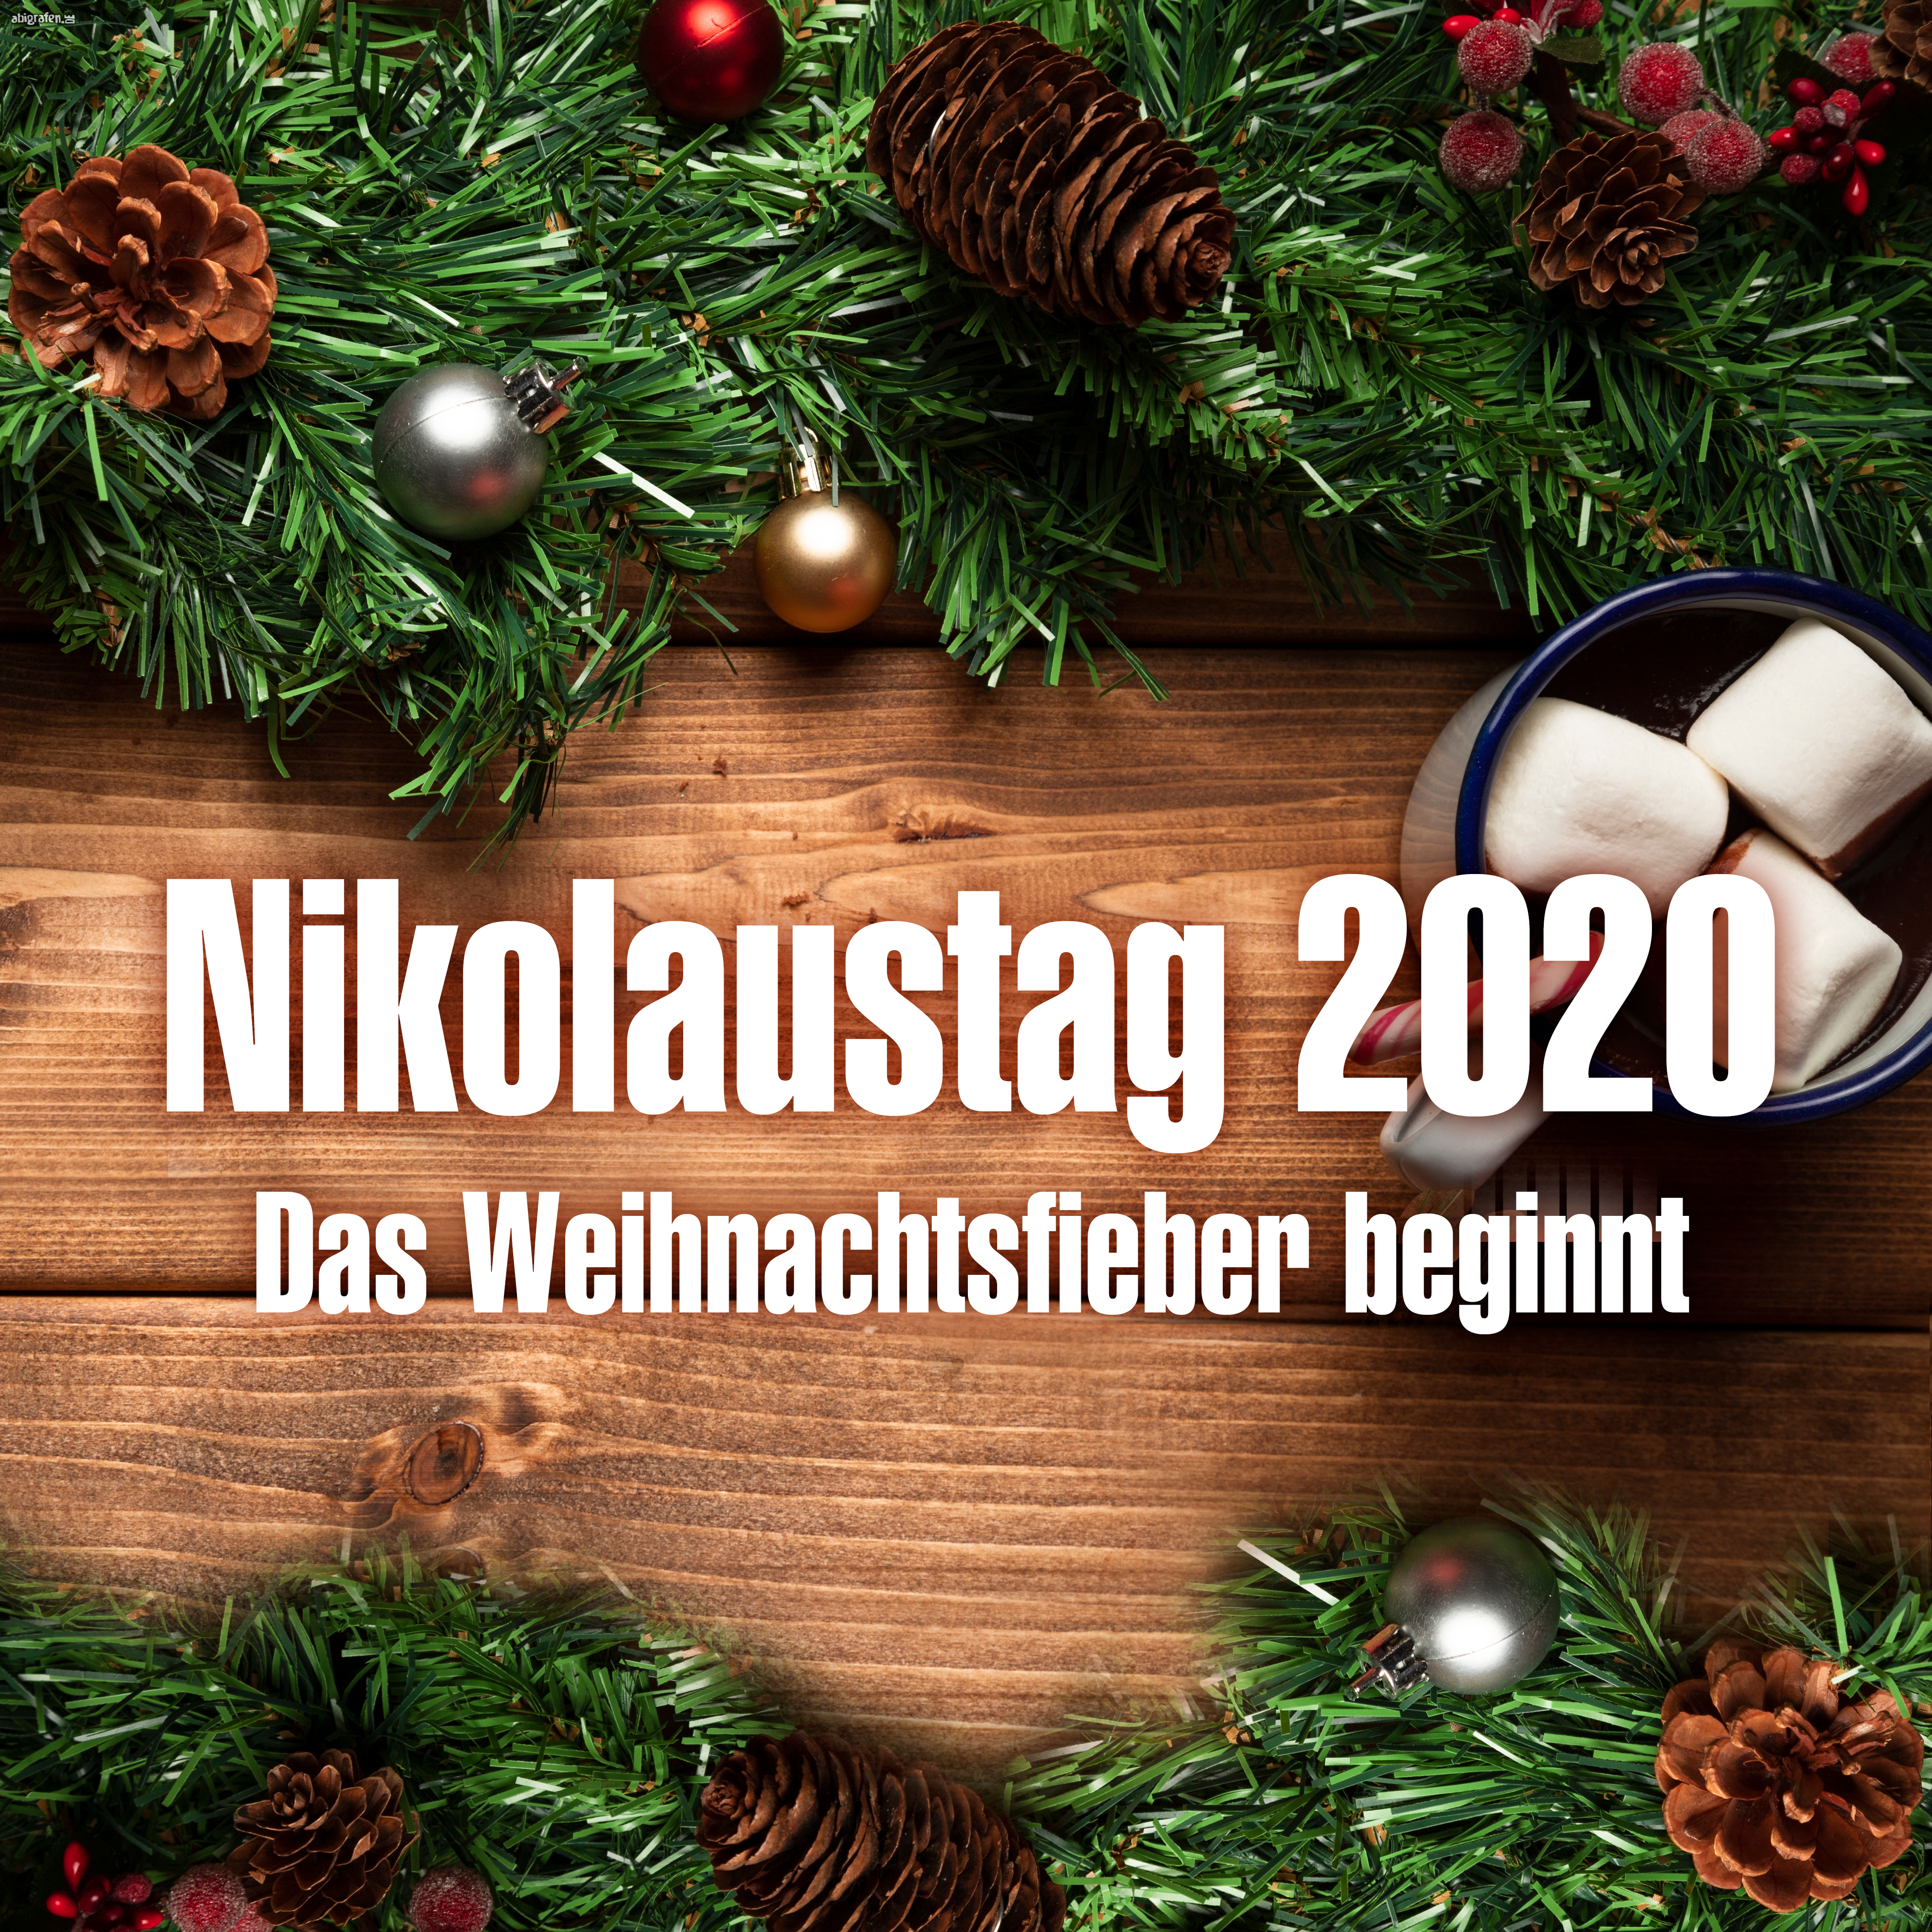 Nikolaustag 2020 weihnachtsfieber